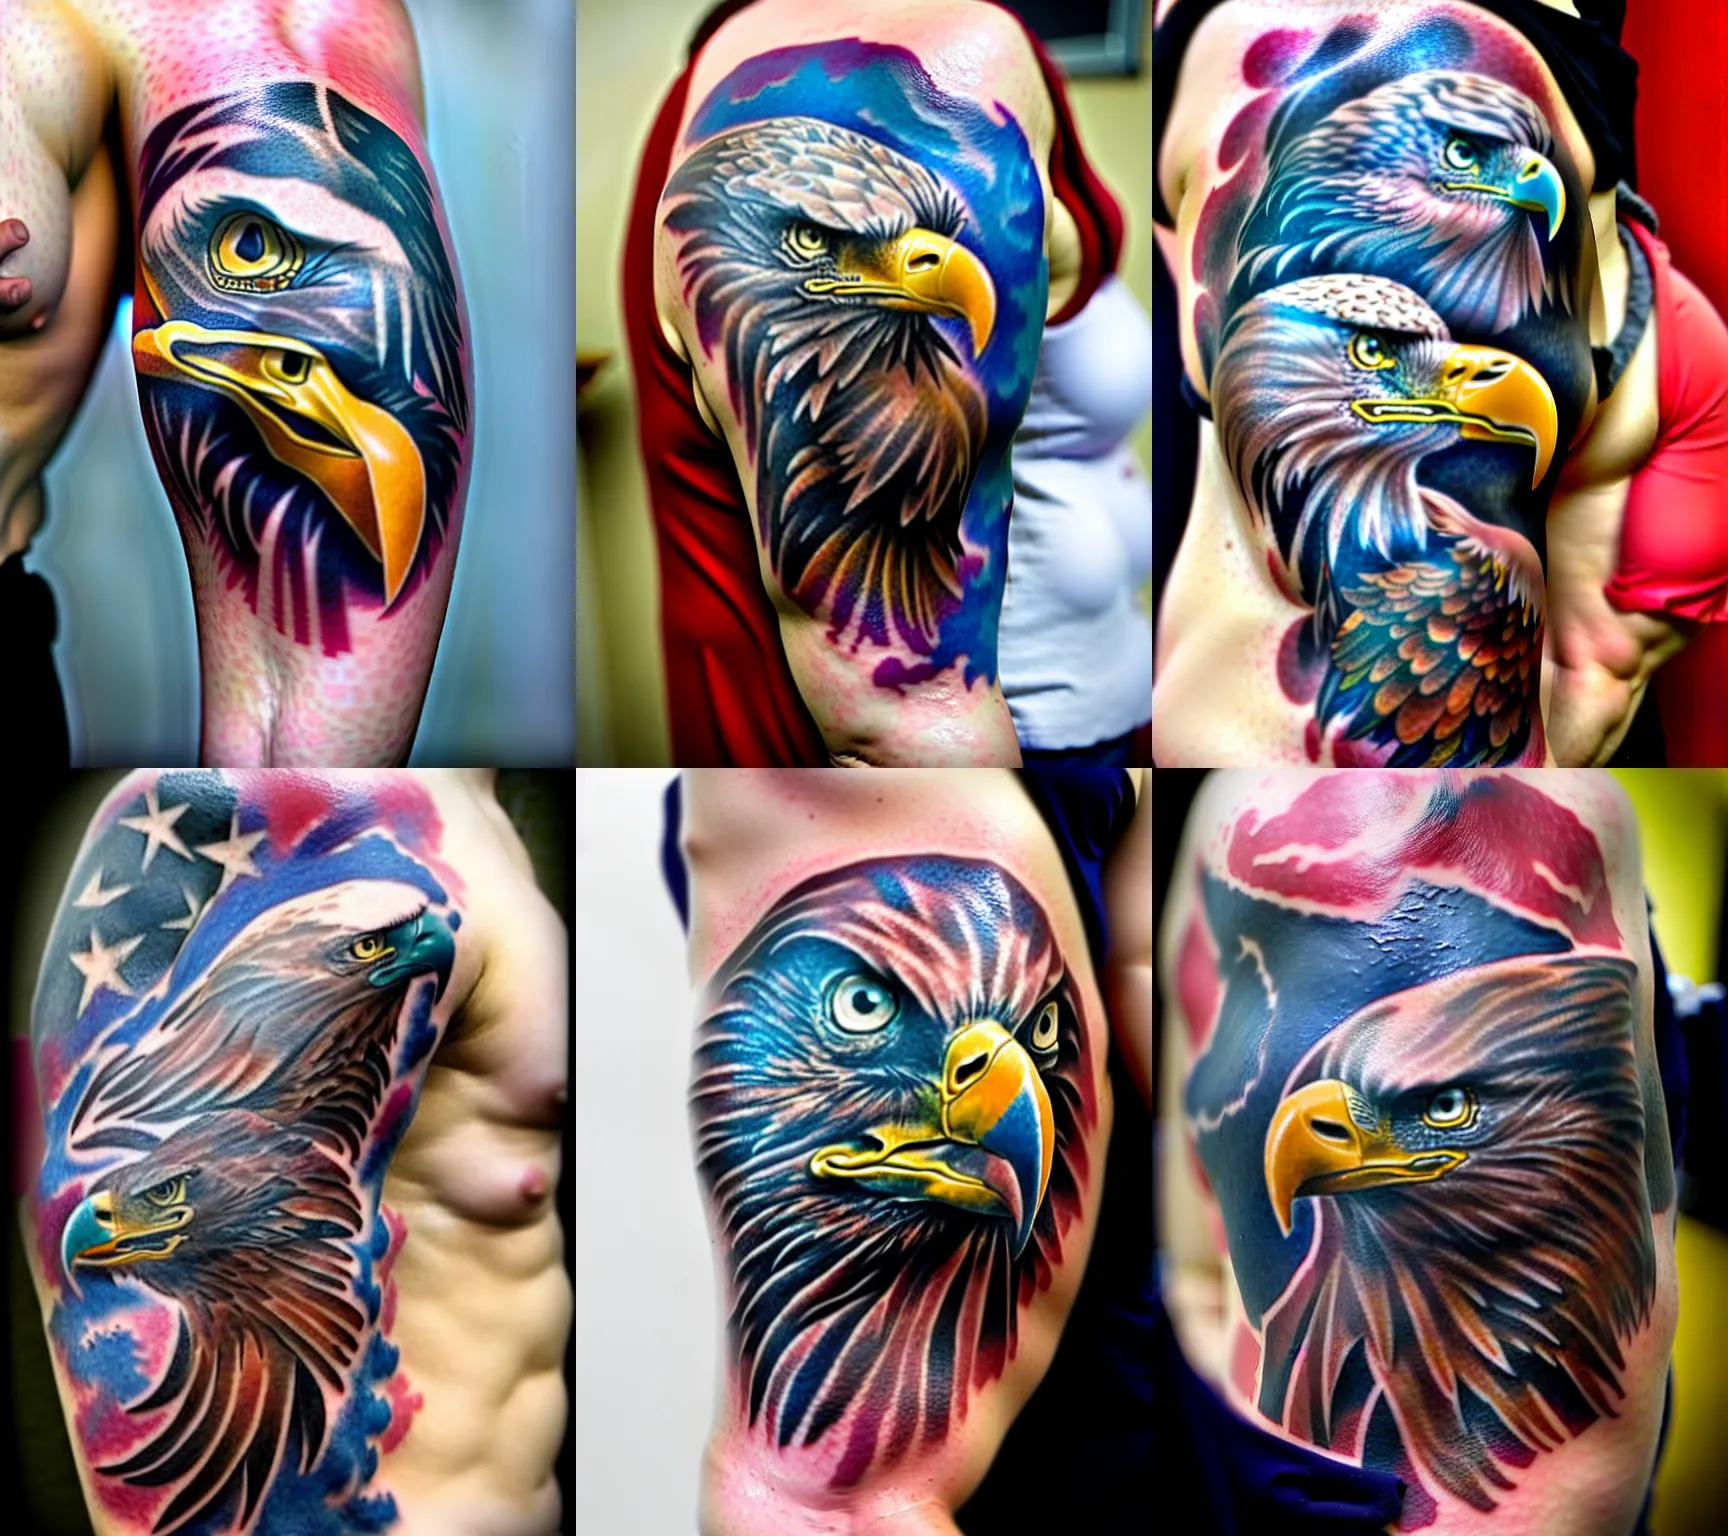 Freestyle Eagle Tattoo - Ace Tattooz and Art Studio India